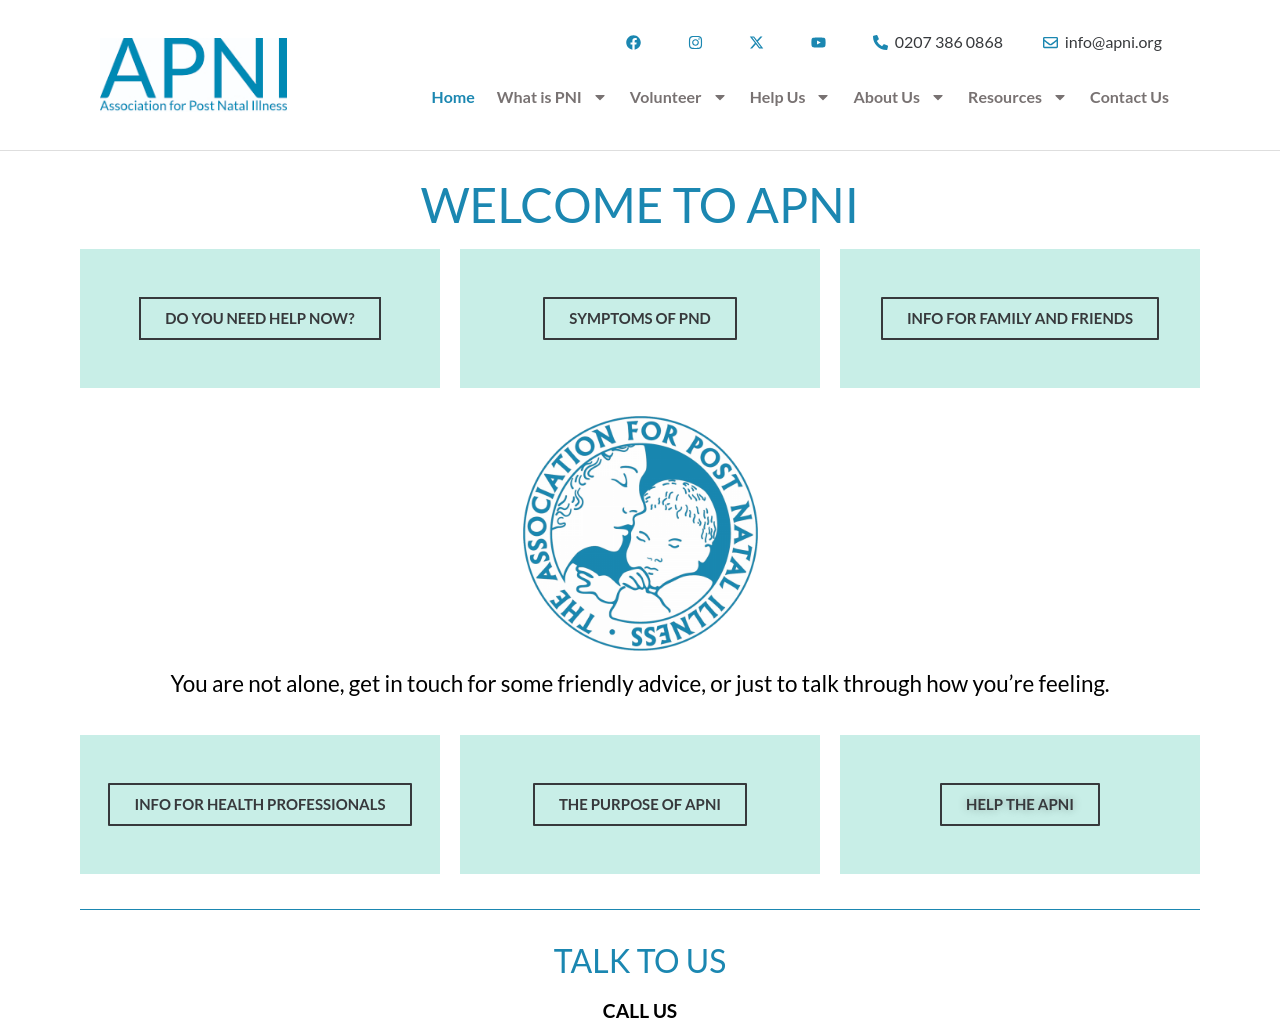 apni.org